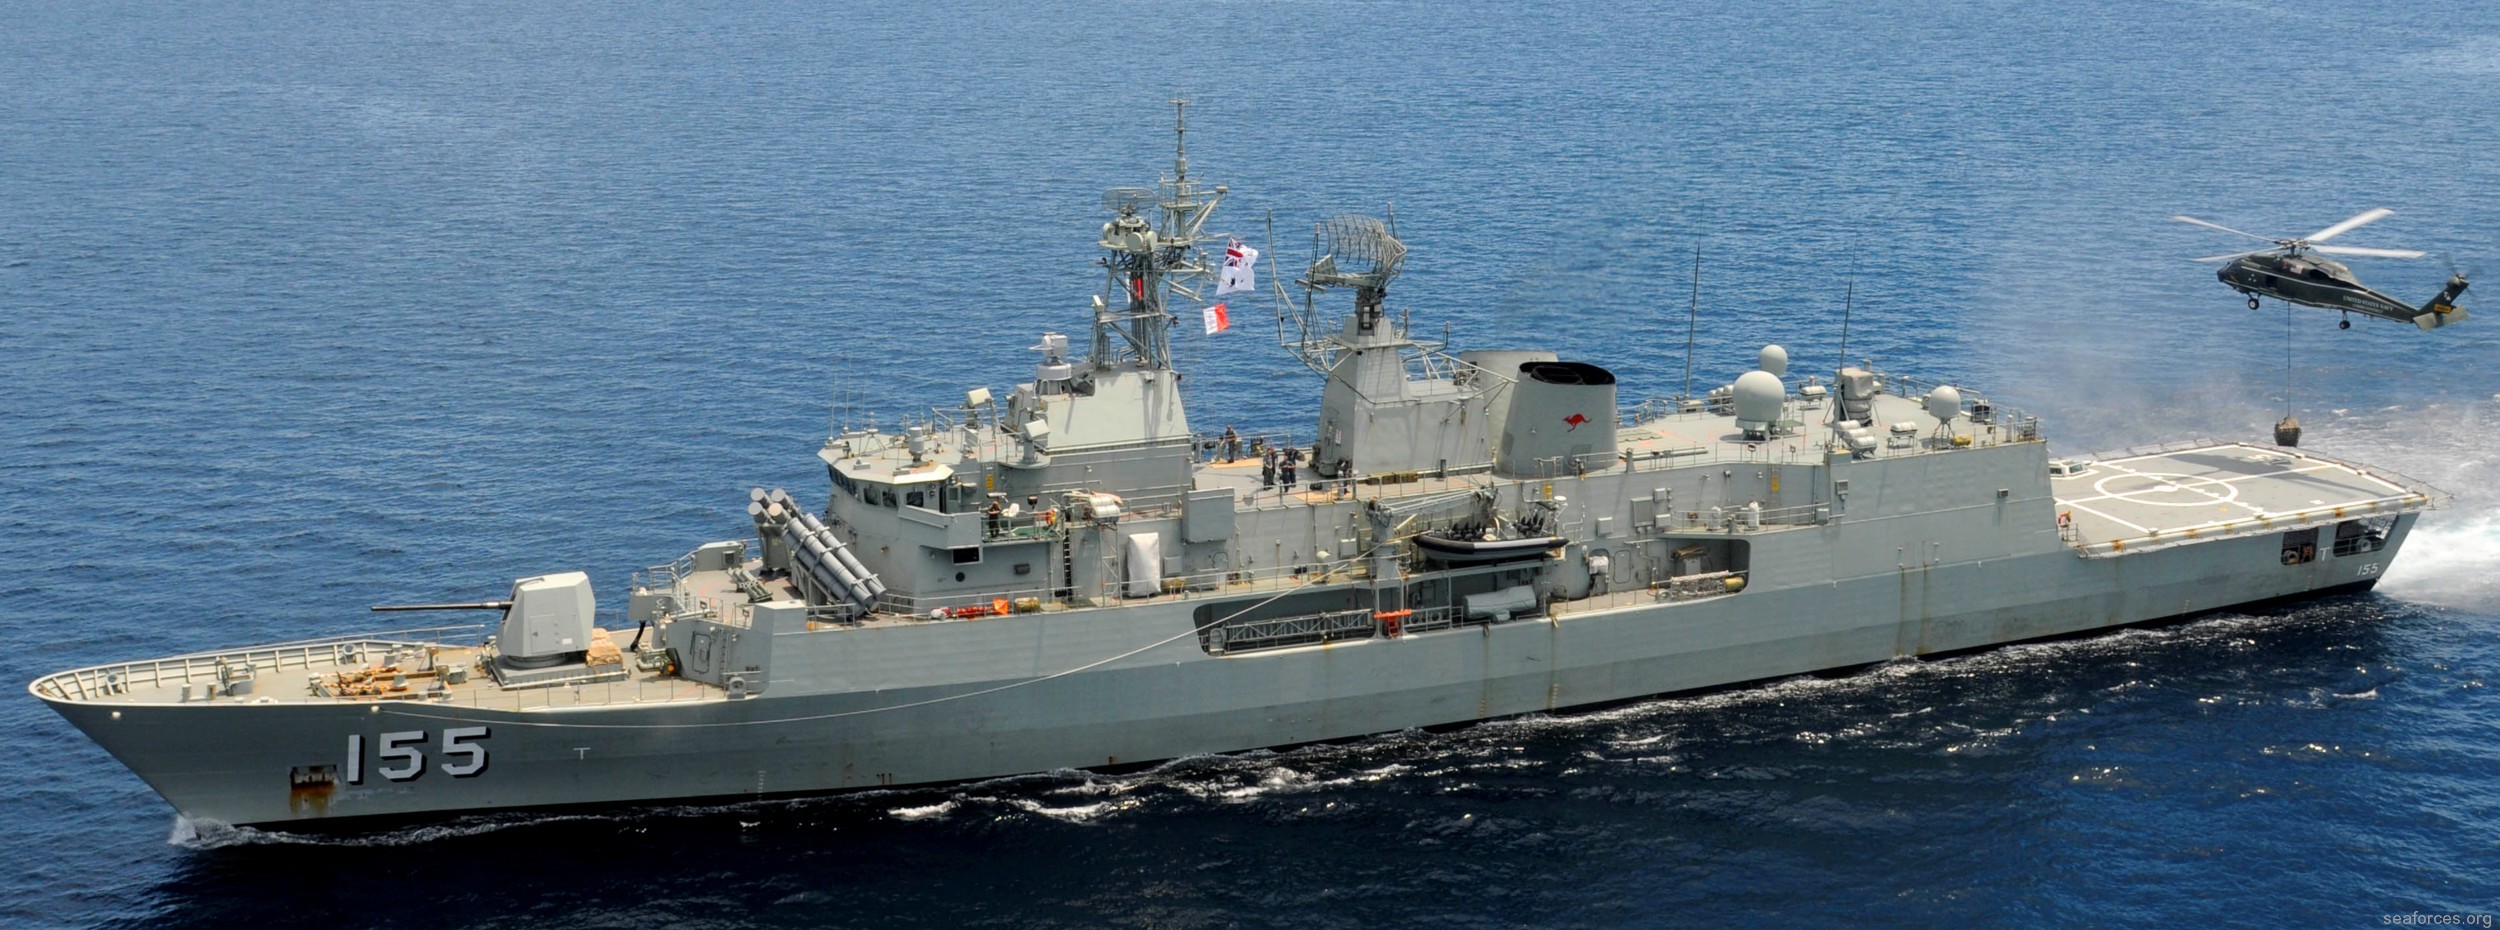 ffh-155 hms ballarat anzac class frigate royal australian navy 2012 08